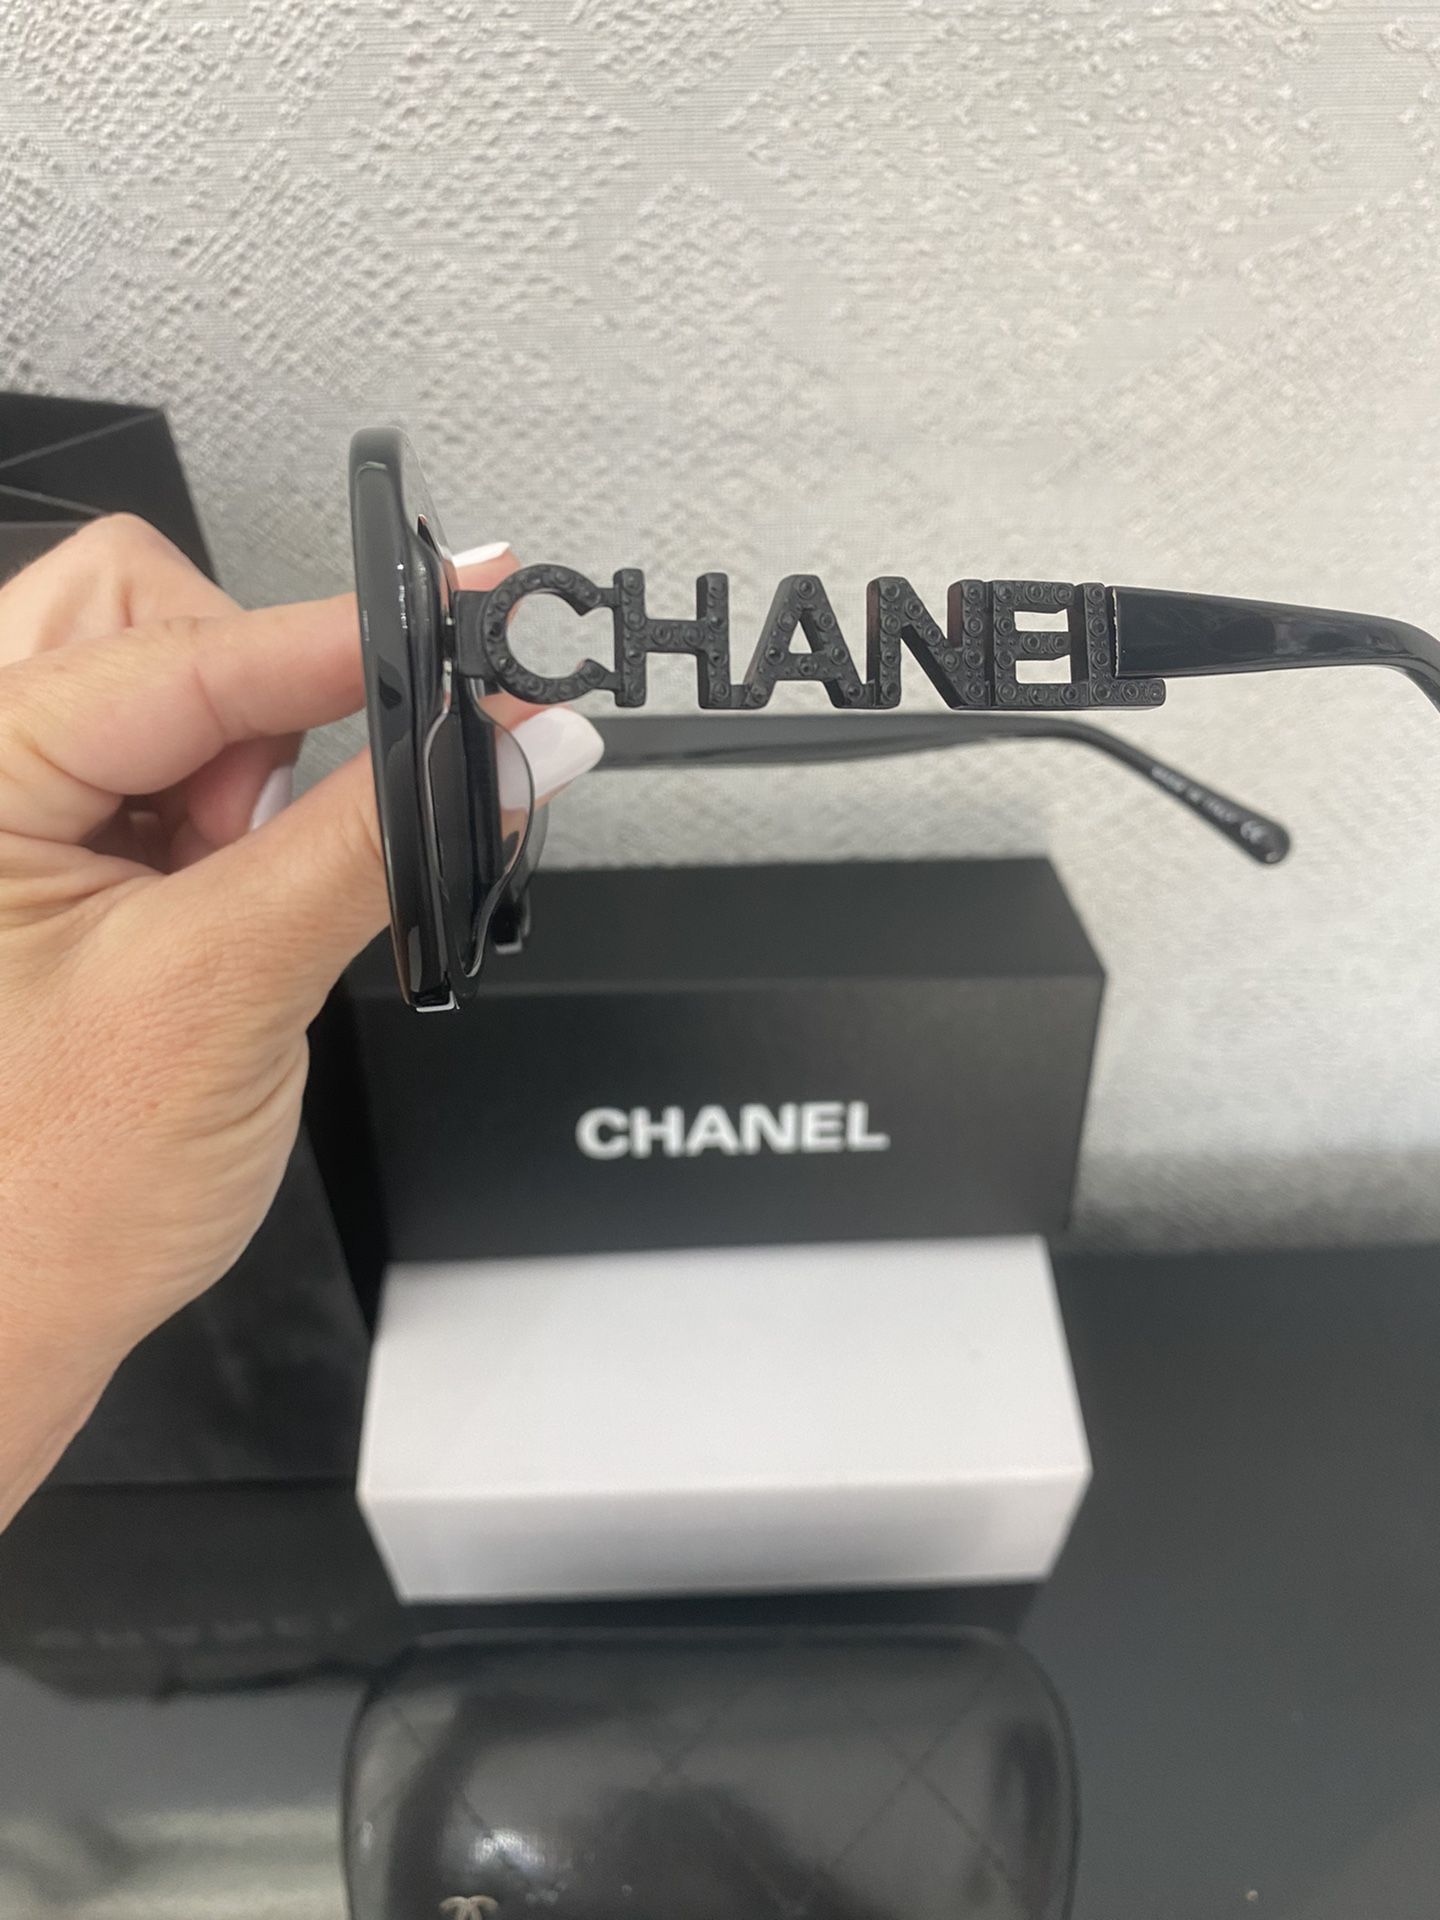 New In Box! Designer Chanel Black Square Sunglasses